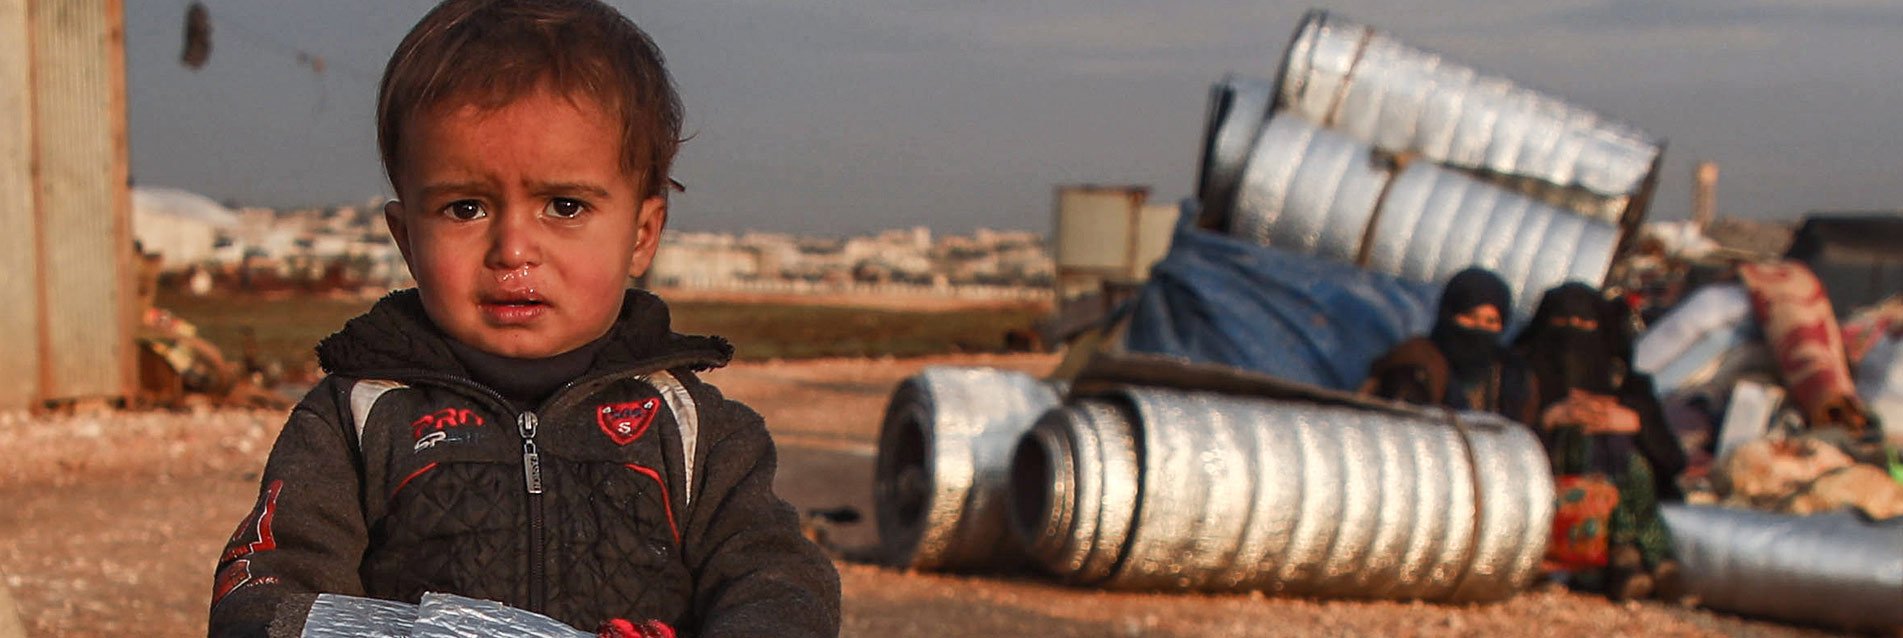 Crise humanitaire en Syrie, trois priorités d’action : aide alimentaire, soins et abris